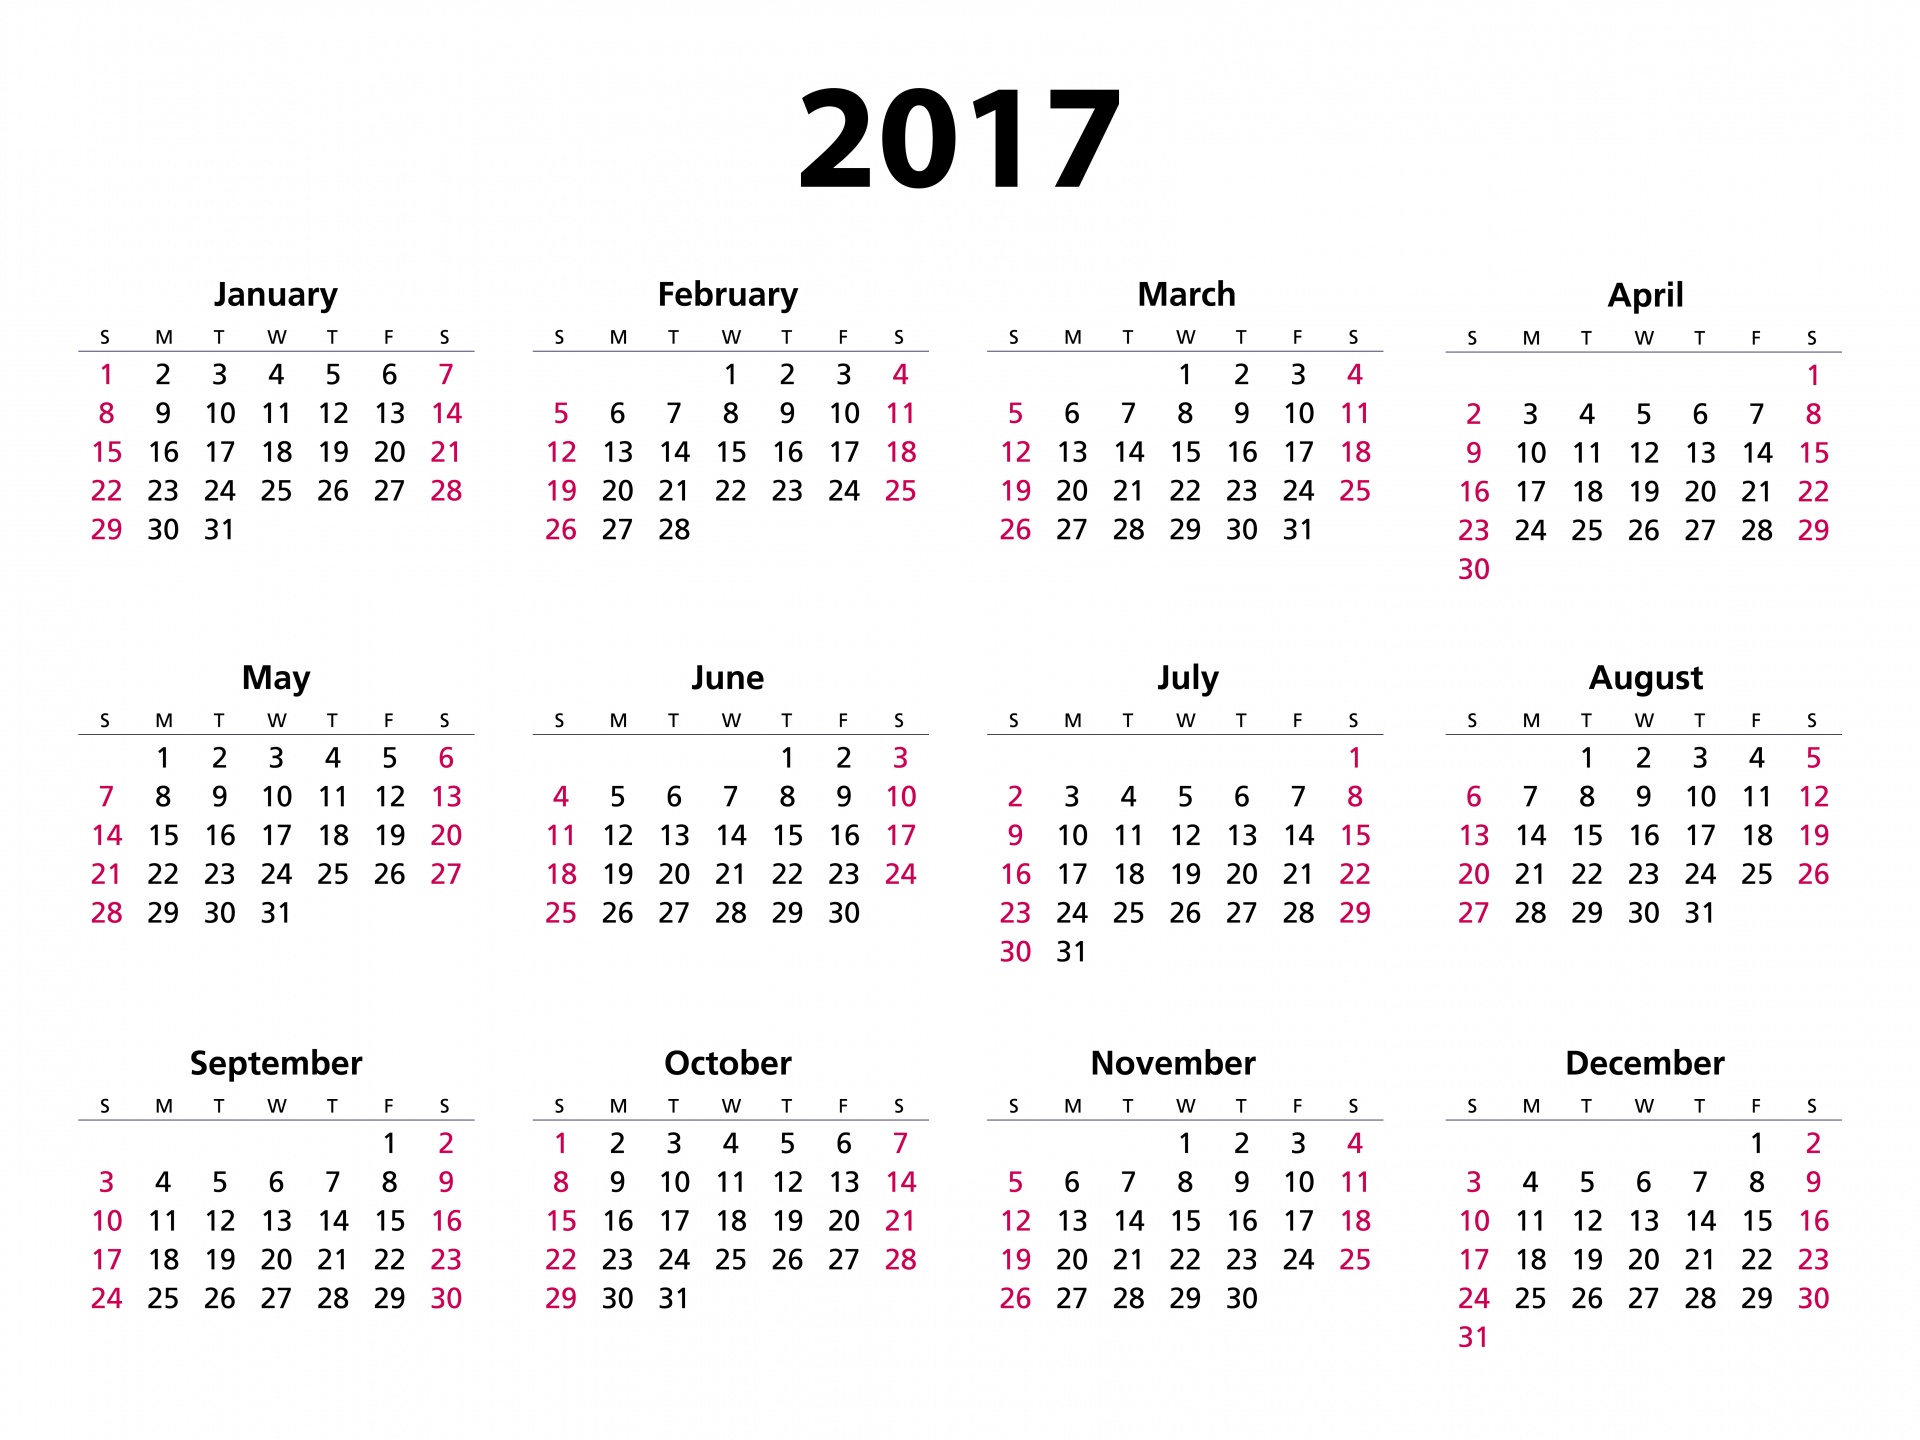 2017 calendar 2017 calendar 2017 free photo